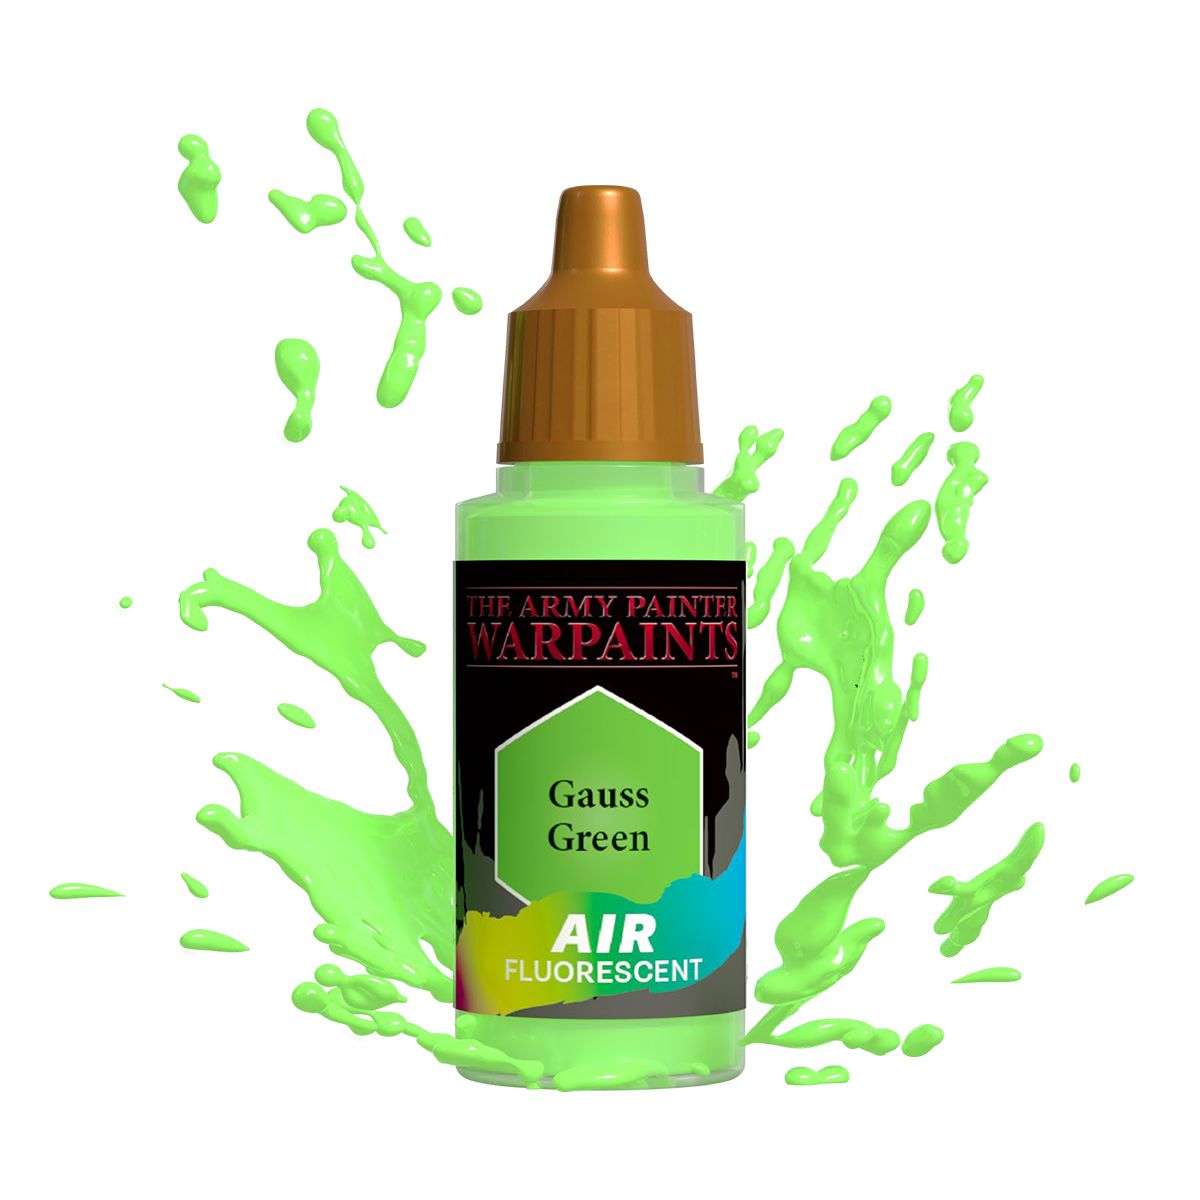 Army Painter Warpaints Air Fluorescent: Gauss Green 18ml